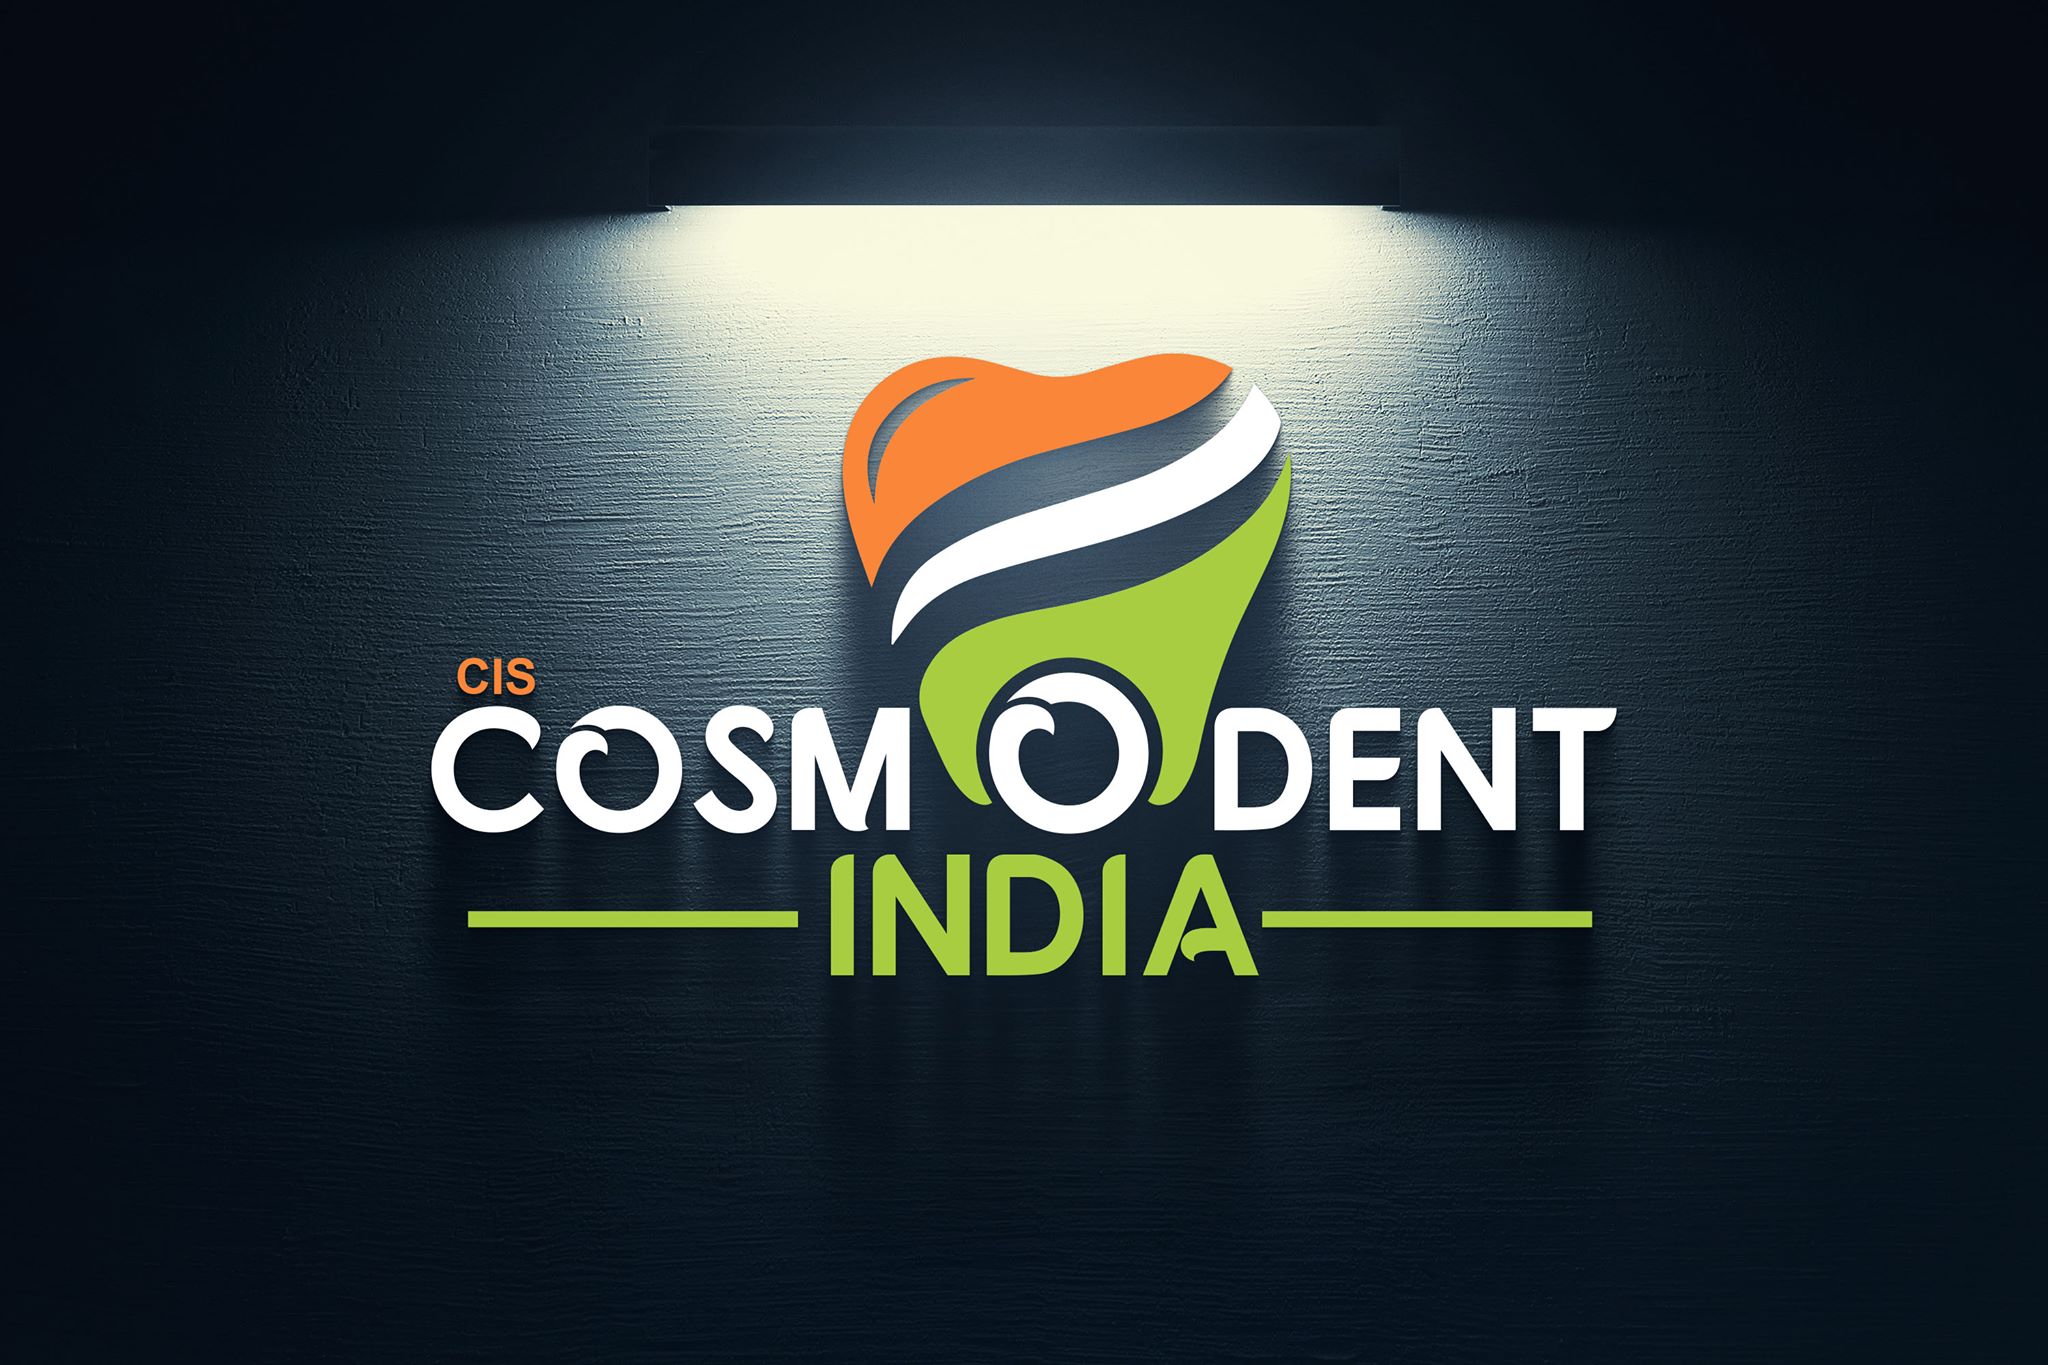 Cosmodent India - Delhi|Hospitals|Medical Services